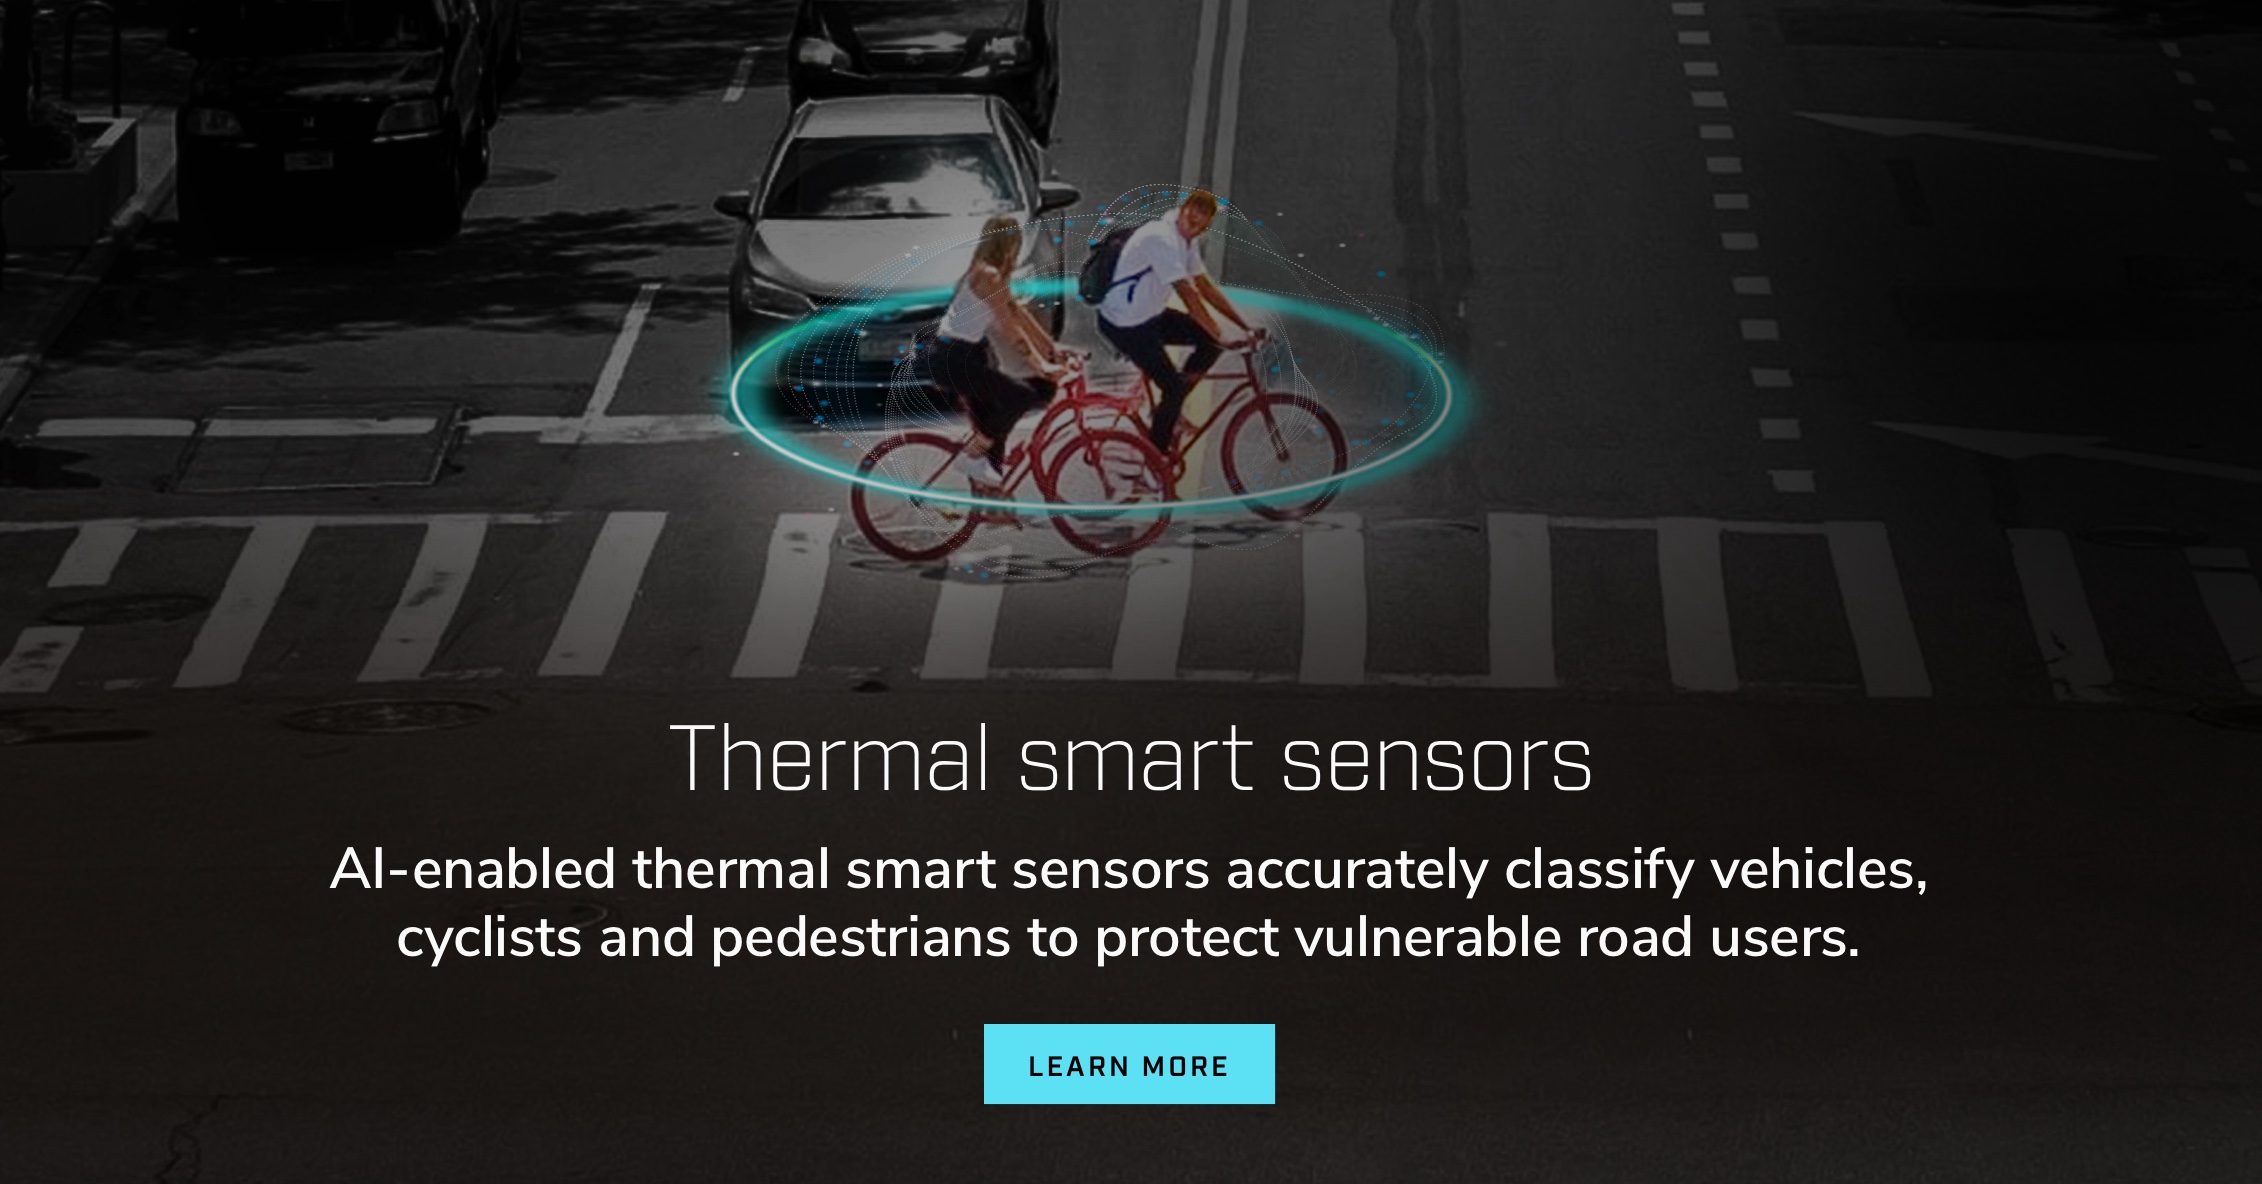 热智能传感器。借助 AI 实现的热智能传感器可对车辆、骑行者和行人进行准确分类，以保护易受伤害的道路使用者。